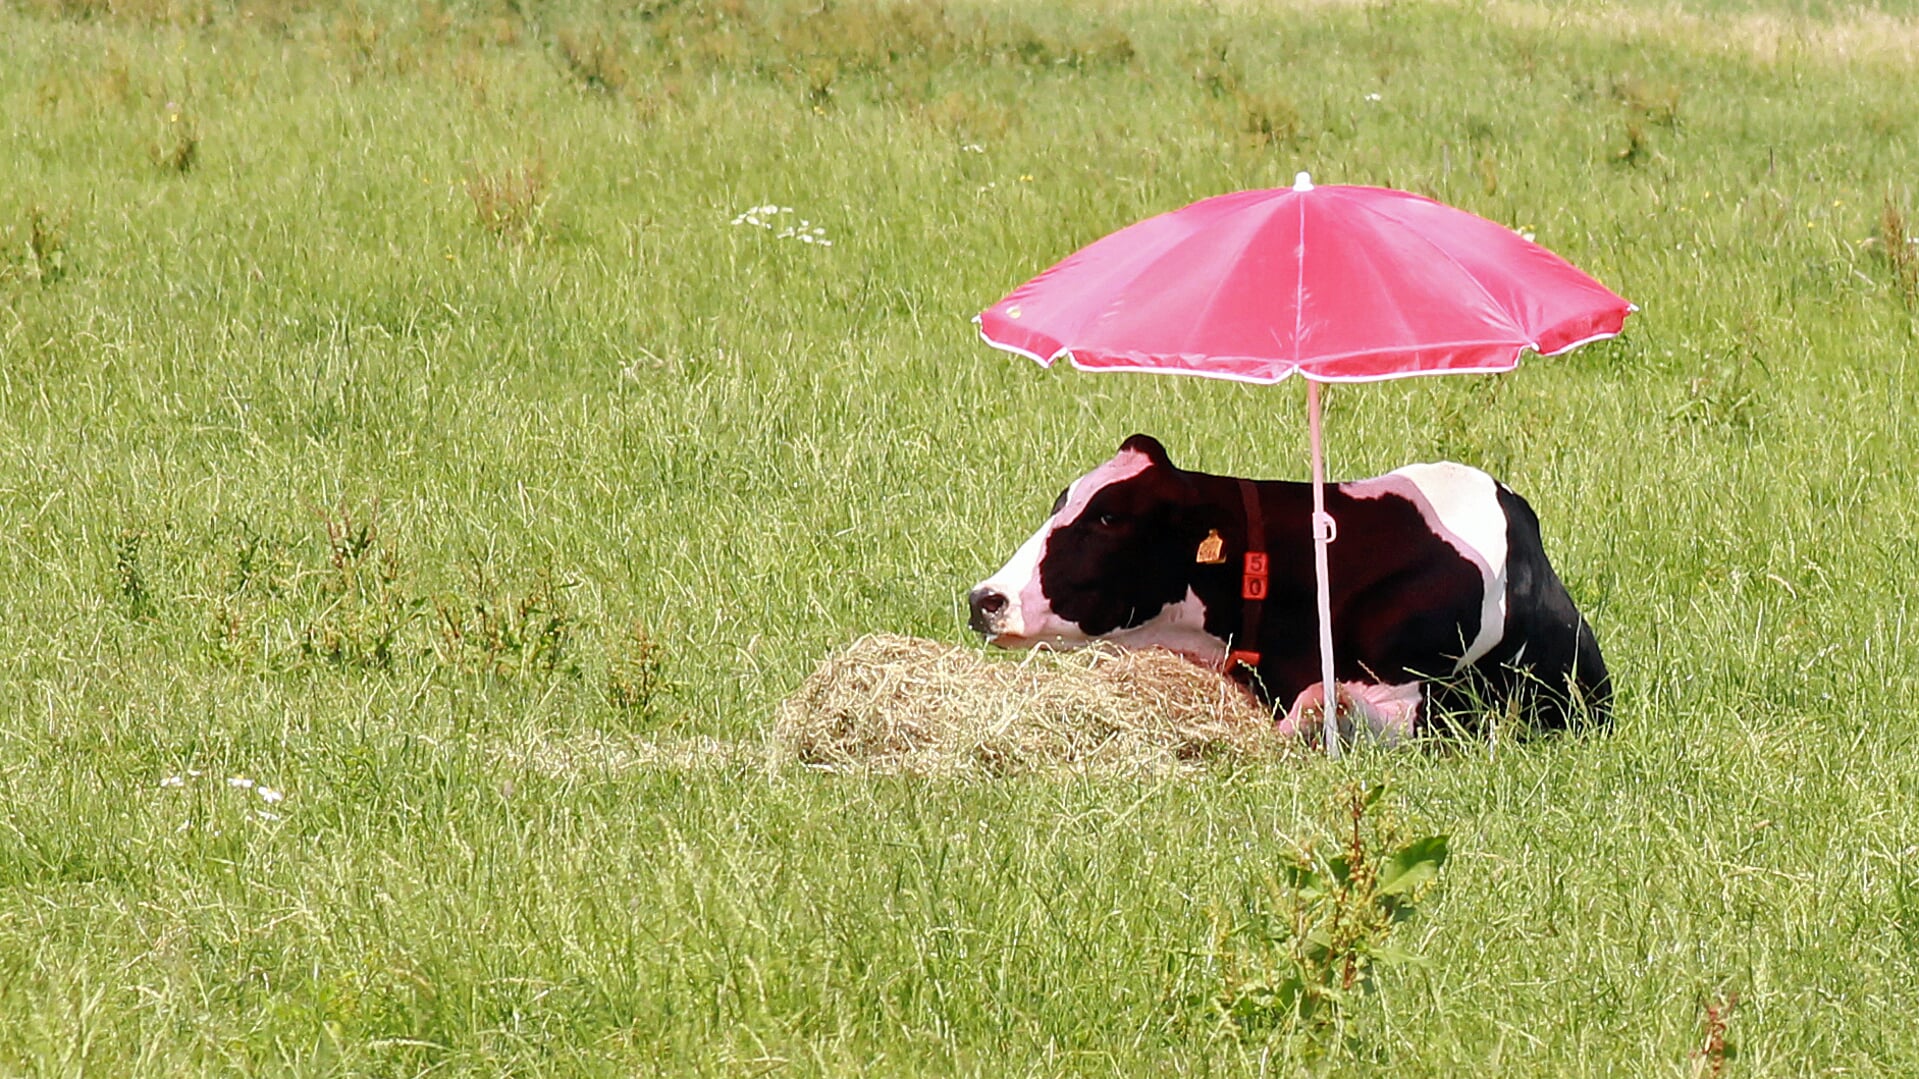 • Koe met parasol in wei.